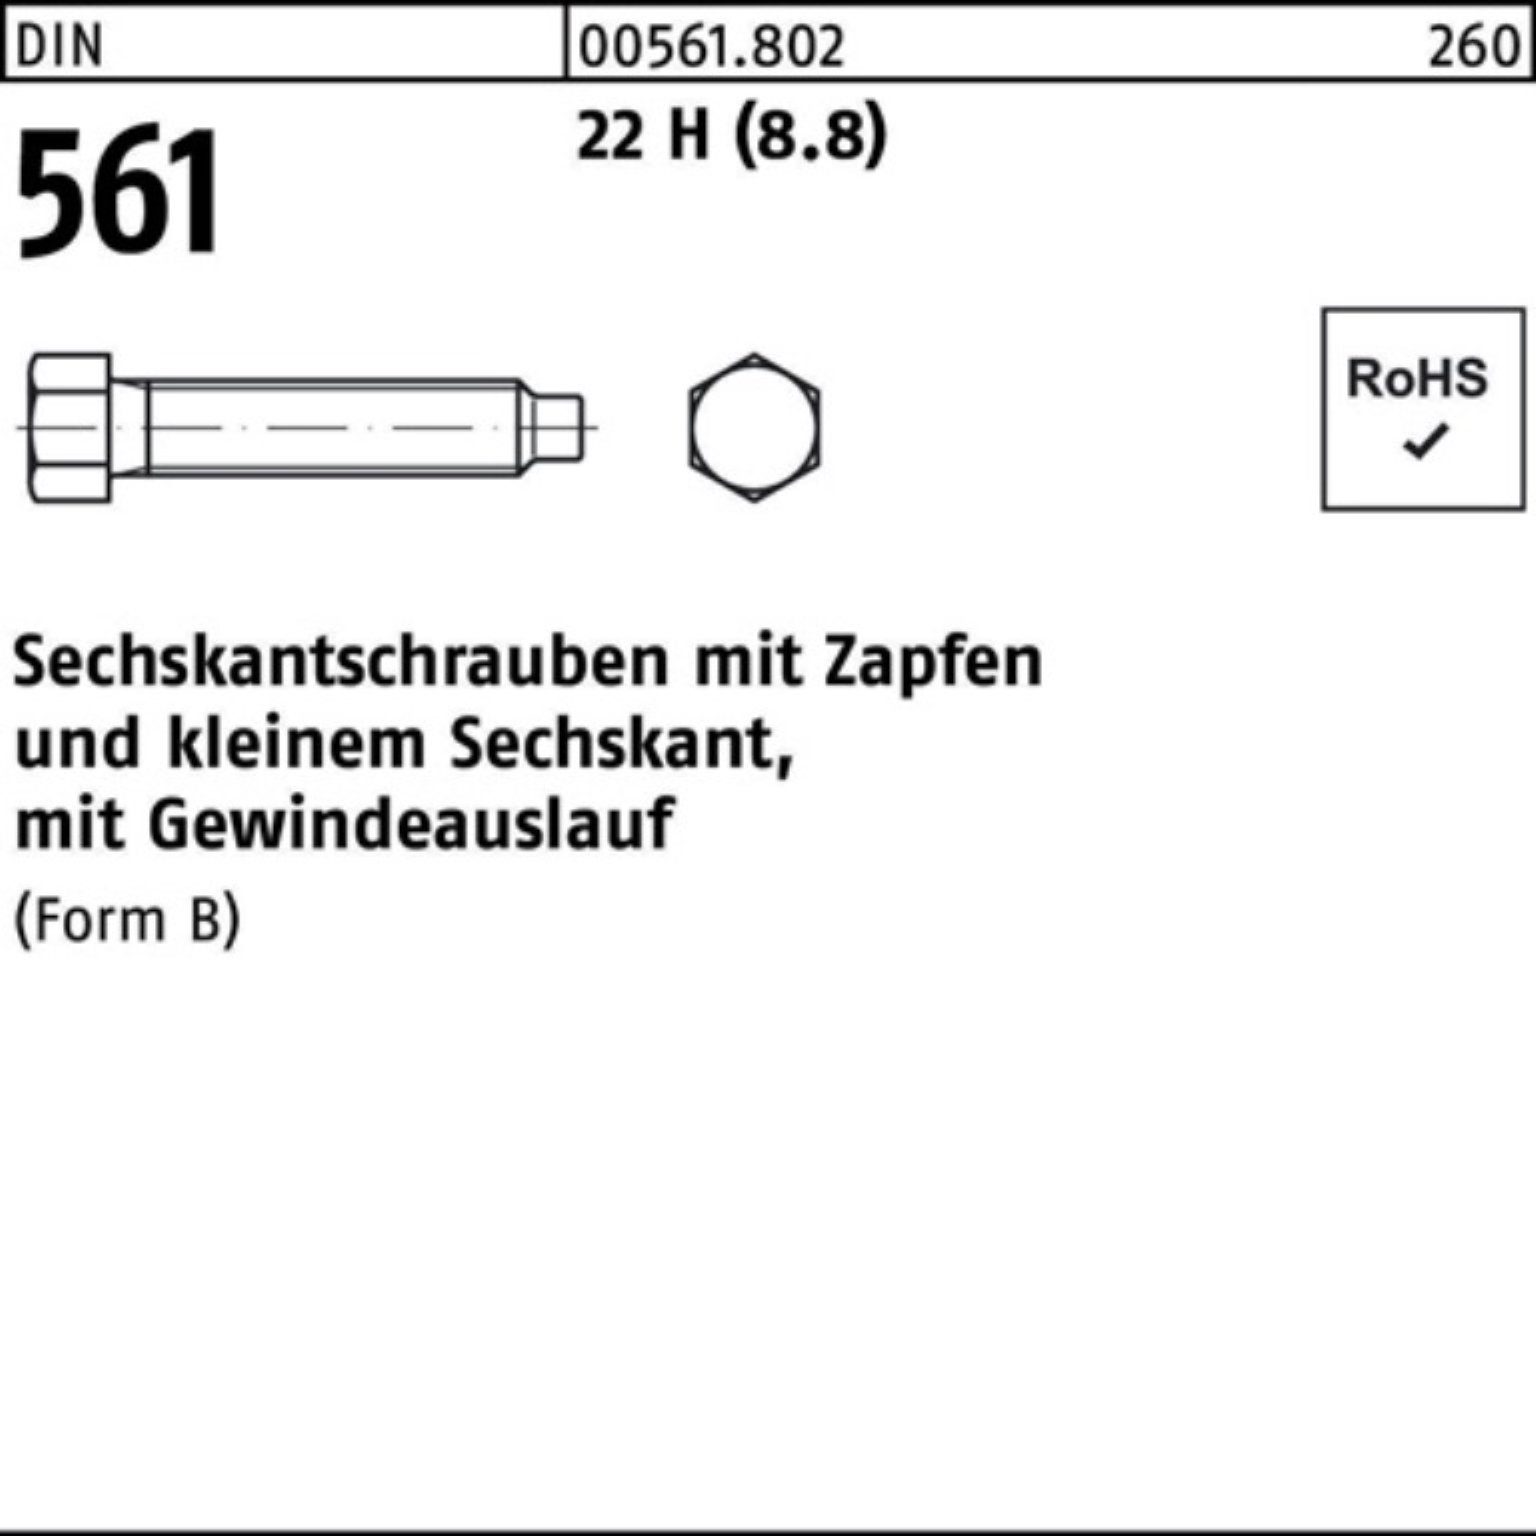 Sechskantschraube St 561 (8.8) 24x DIN 22 80 1 Zapfen Reyher Pack BM Sechskantschraube H 100er